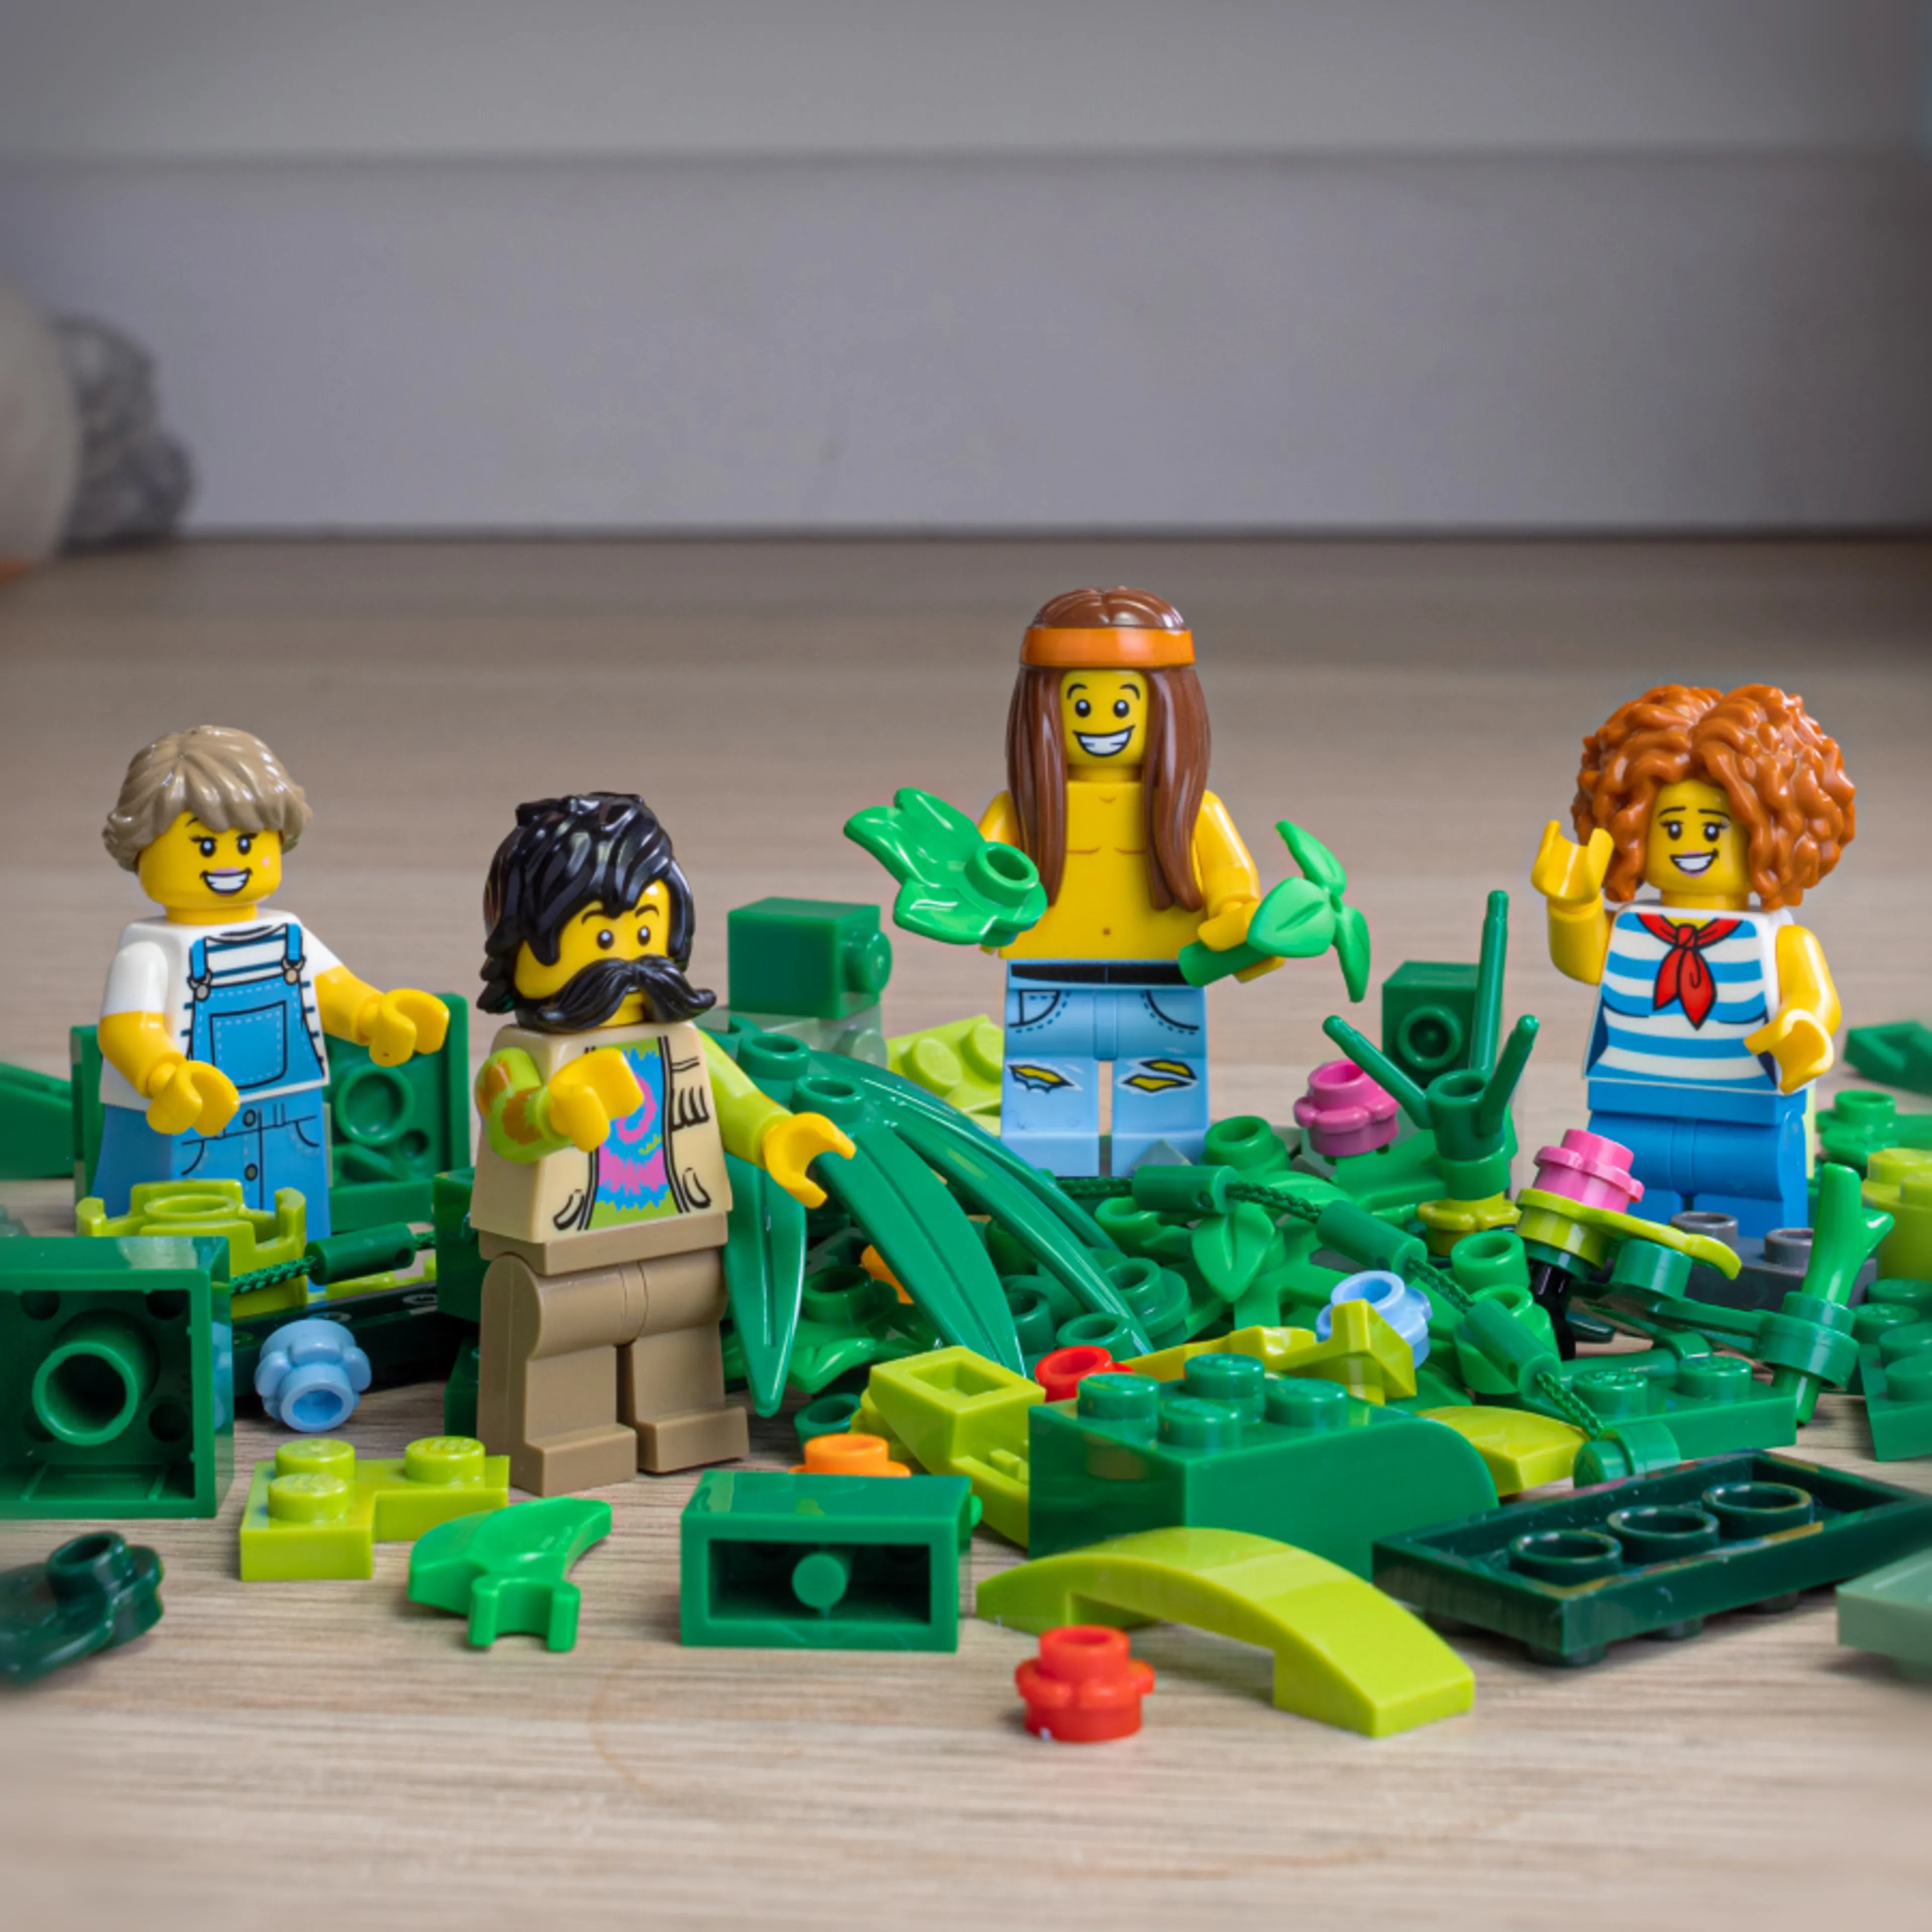 Prenez des briques LEGO® vertes